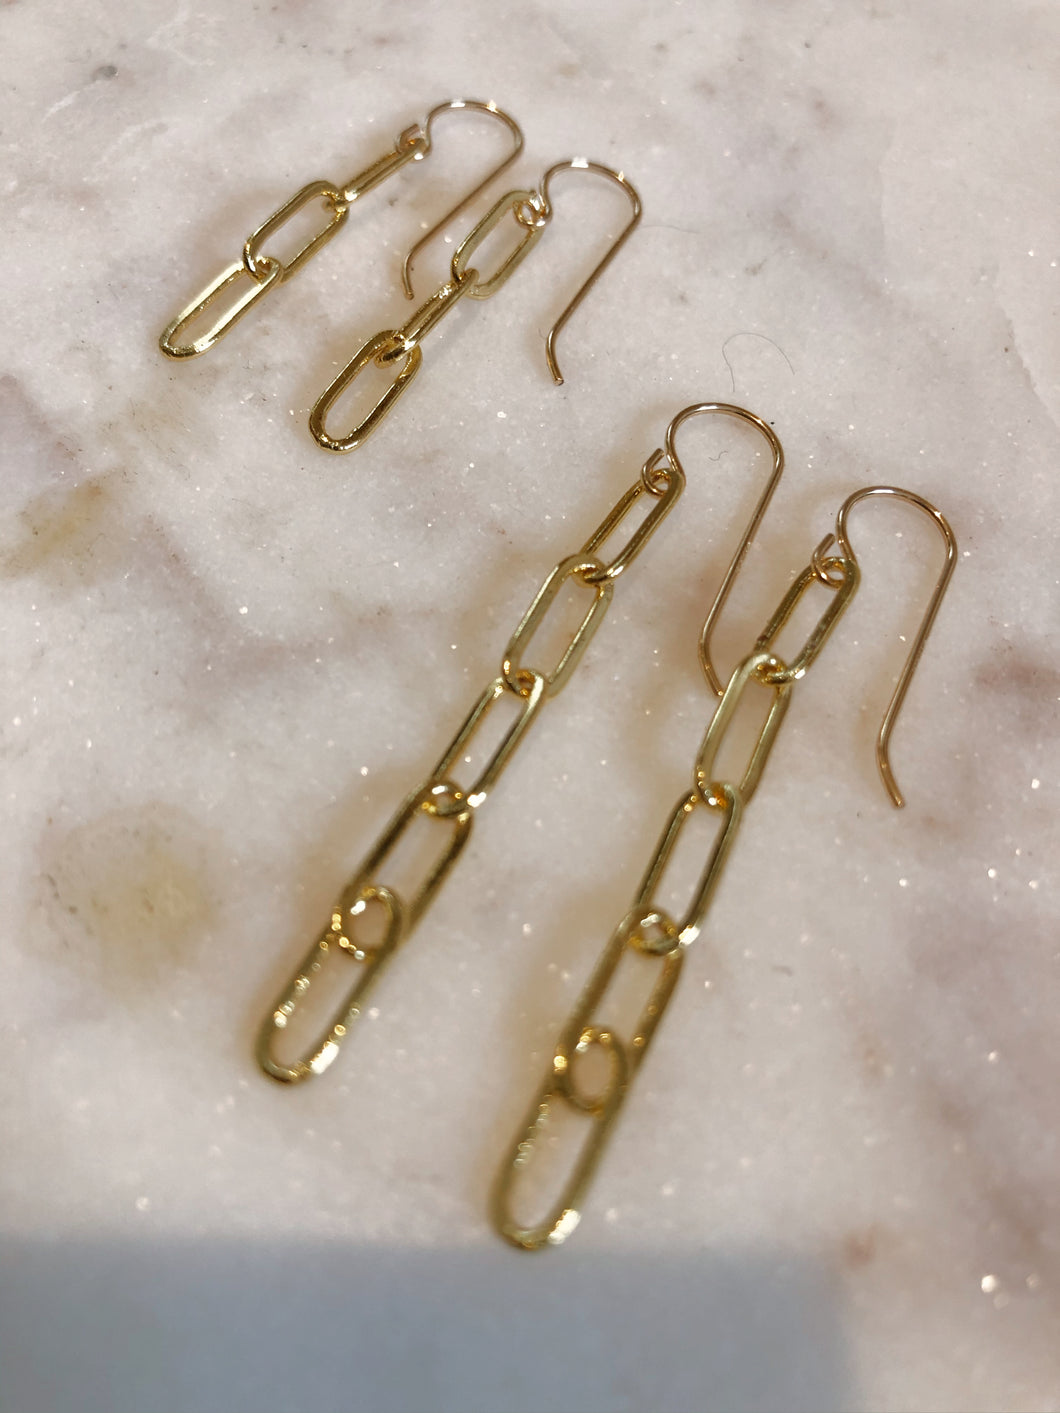 Firefly Linx Earrings